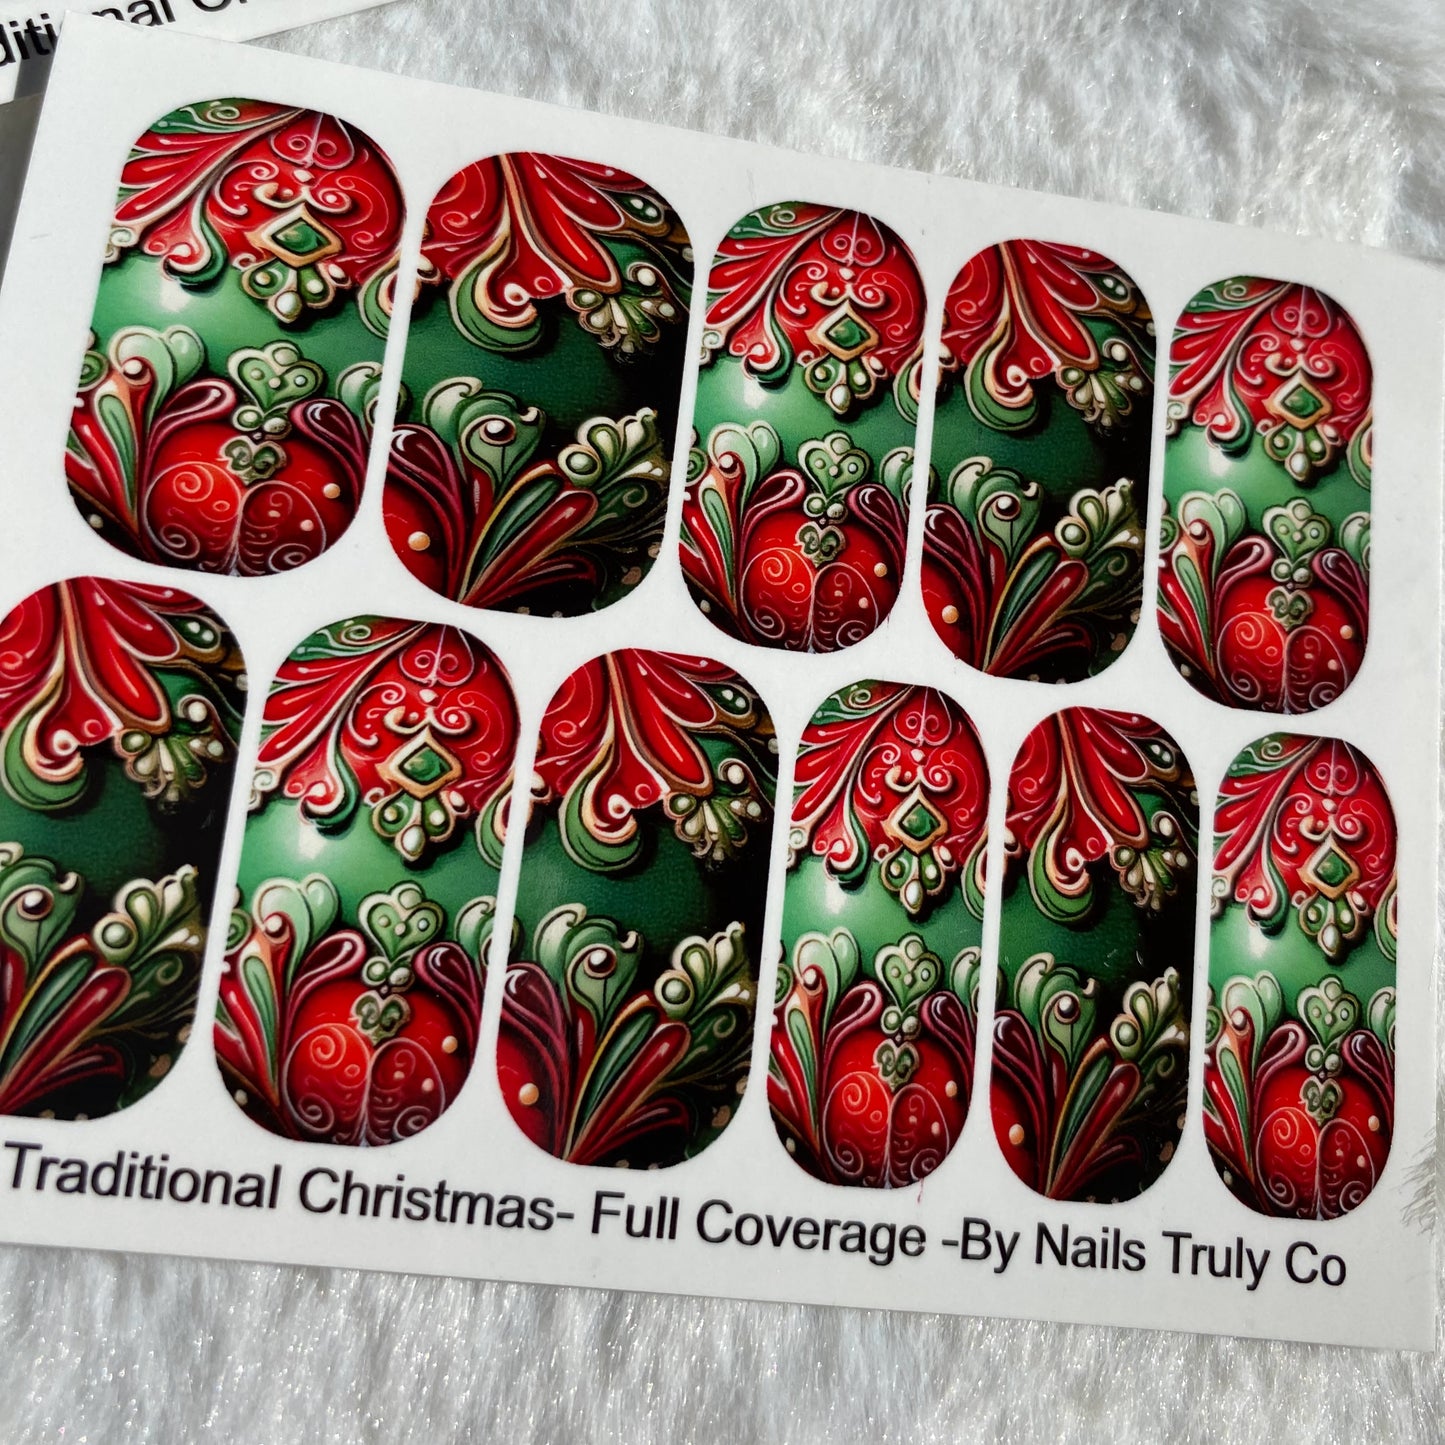 Christmas Nail Art - A Traditional Christmas